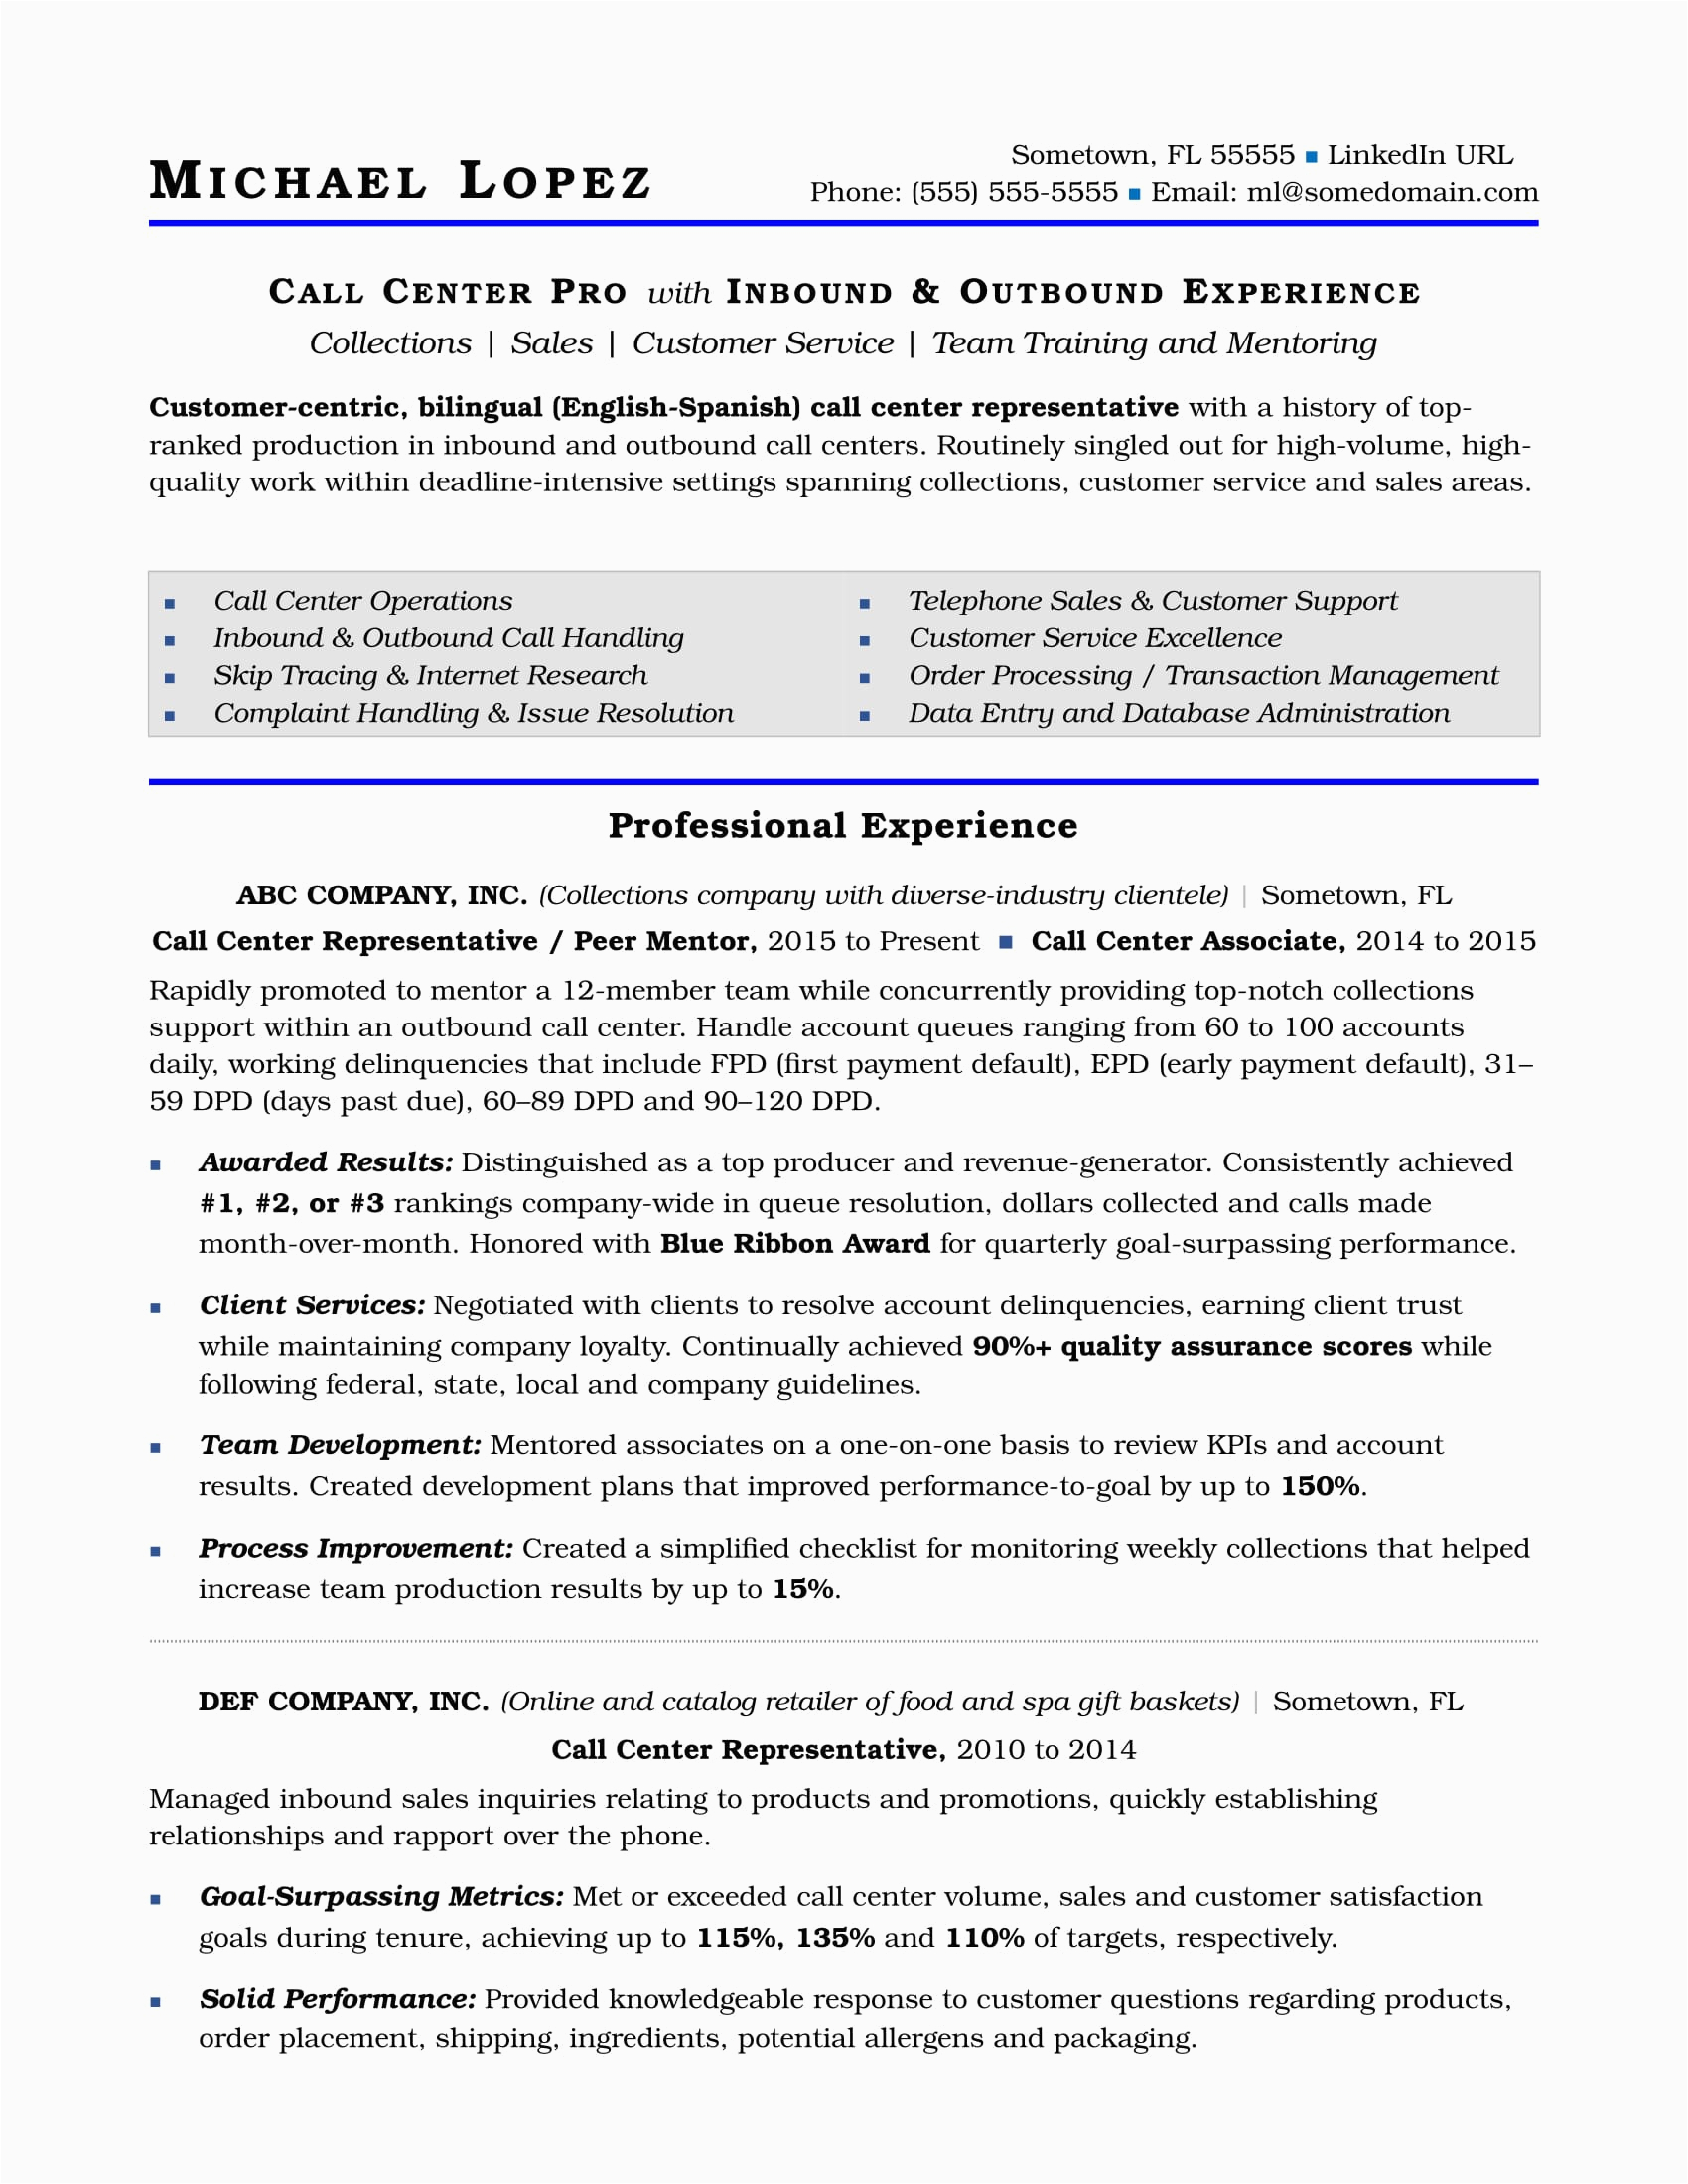 Resume Samples for Call Center Job Call Center Resume Sample